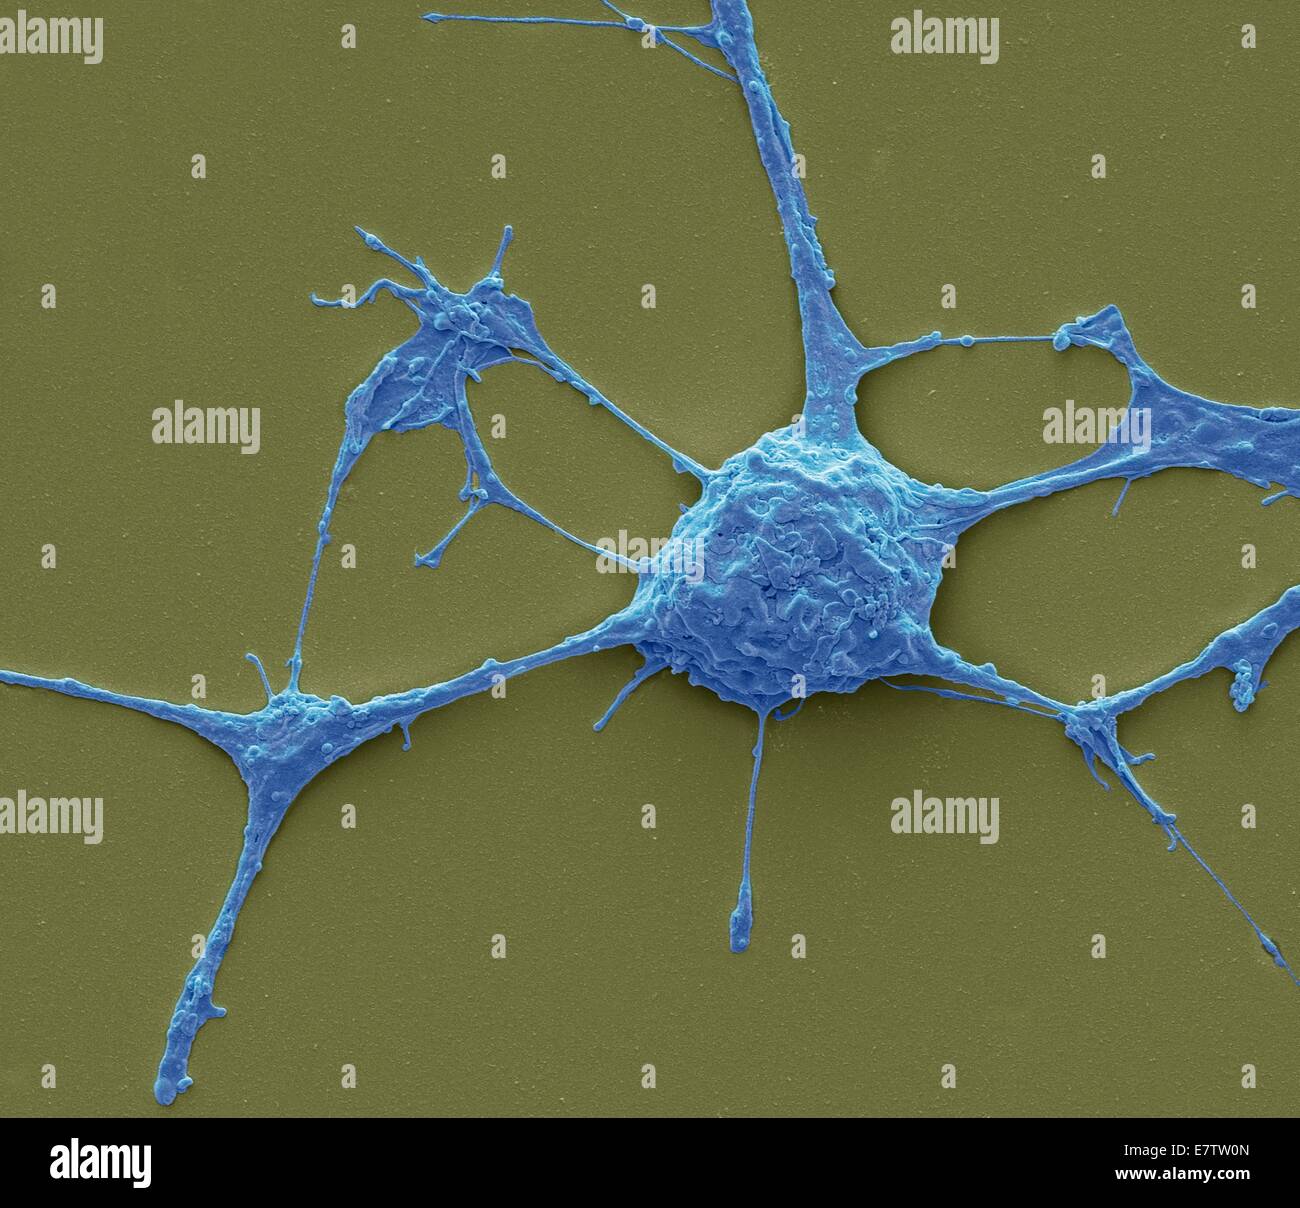 Neurone. Scanning Electron Schliffbild (SEM) von einem PC12 Neurone in Kultur. PC12 Zelllinie, entwickelt von einem Phäochromozytom Tumor von der Ratte Nebennierenmark, ist eine Premiere Modell für die Untersuchung der neuronalen Differenzierung geworden. Wenn Kultur behandelt Stockfoto